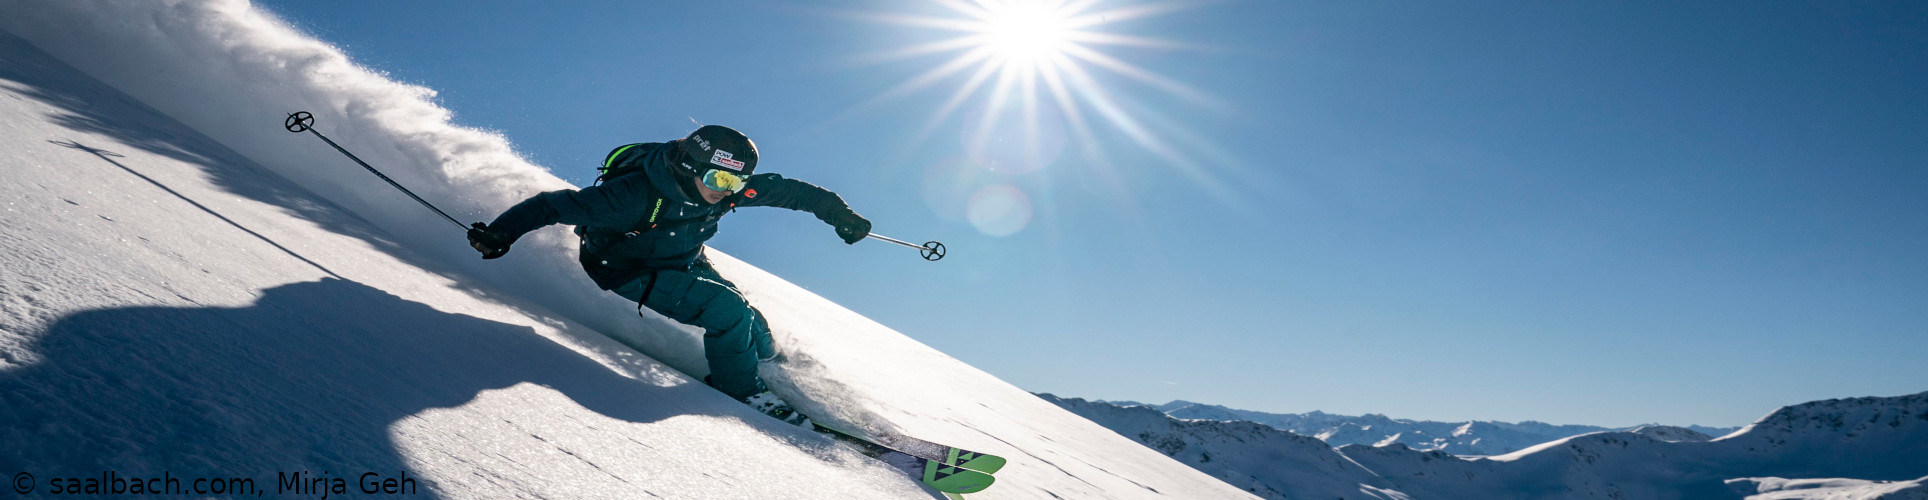 SAALBACH HINTERGLEMM – Skiwochenende nah an der Gondel – mit 3 vollen Skitagen ab Freitag früh 